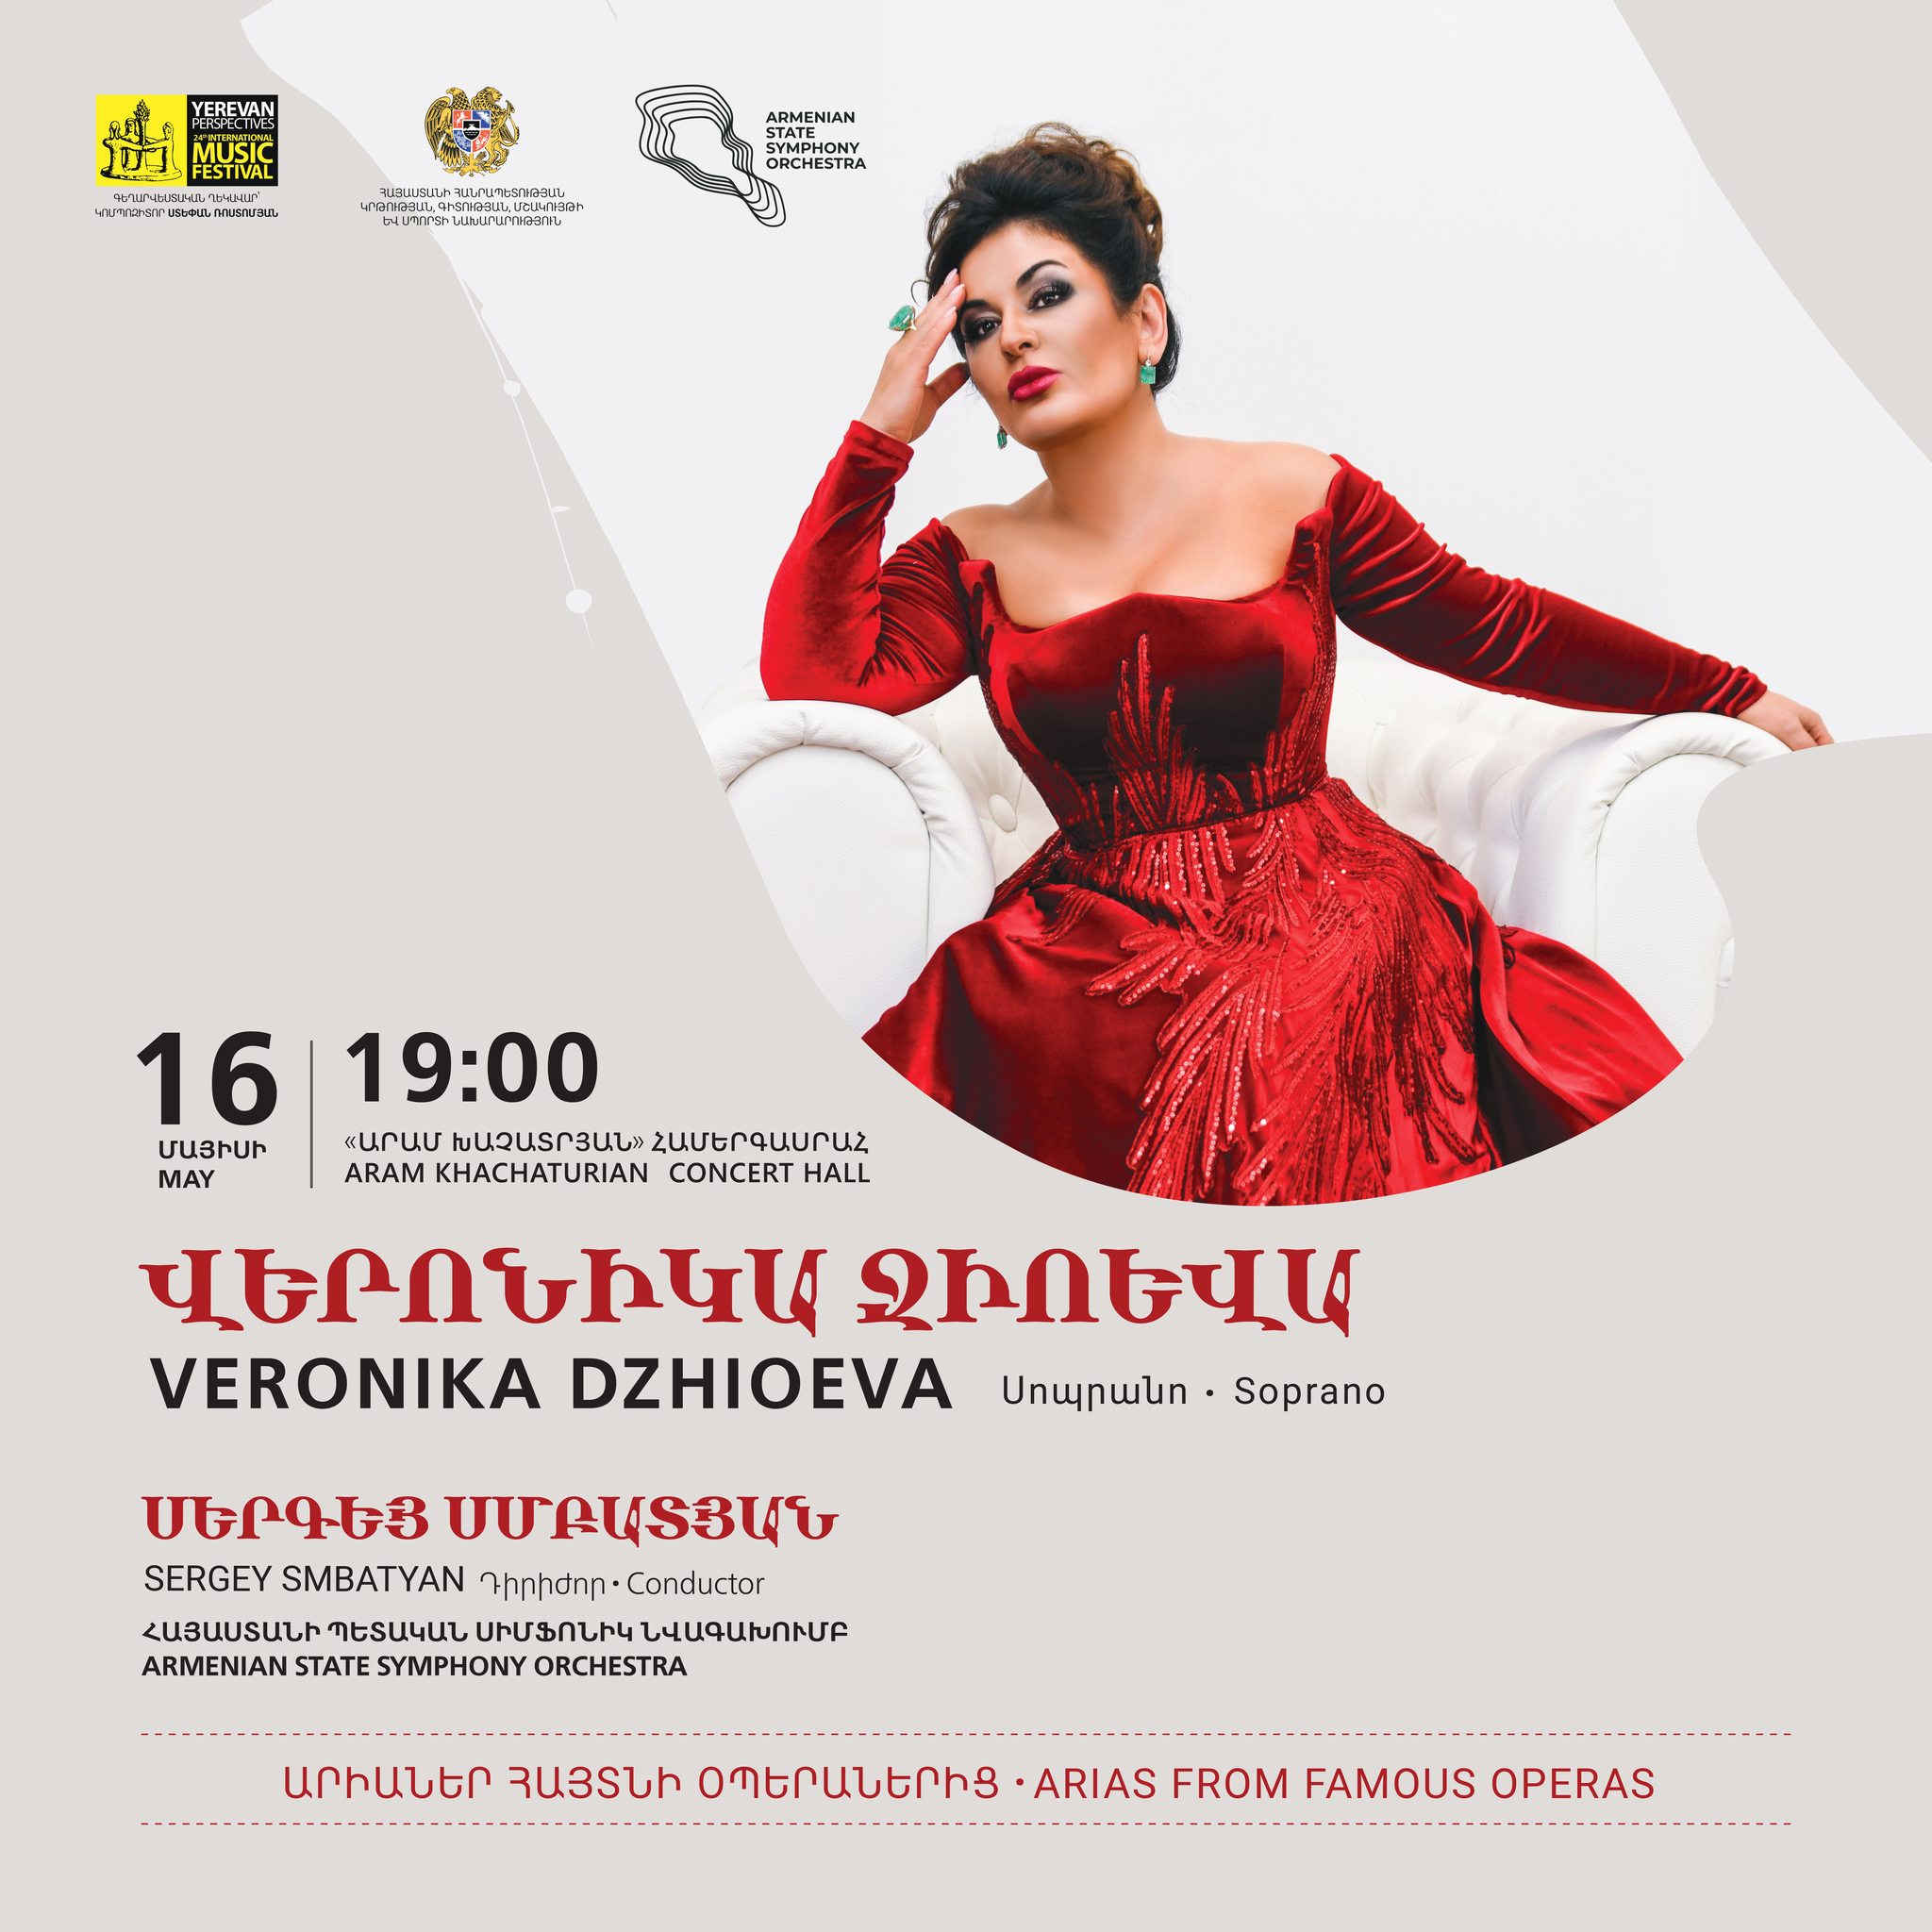 Մոլորակի լավագույն սոպրանոներից մեկը` Վերոնիկա Ջիոևան գալիս է Երևան